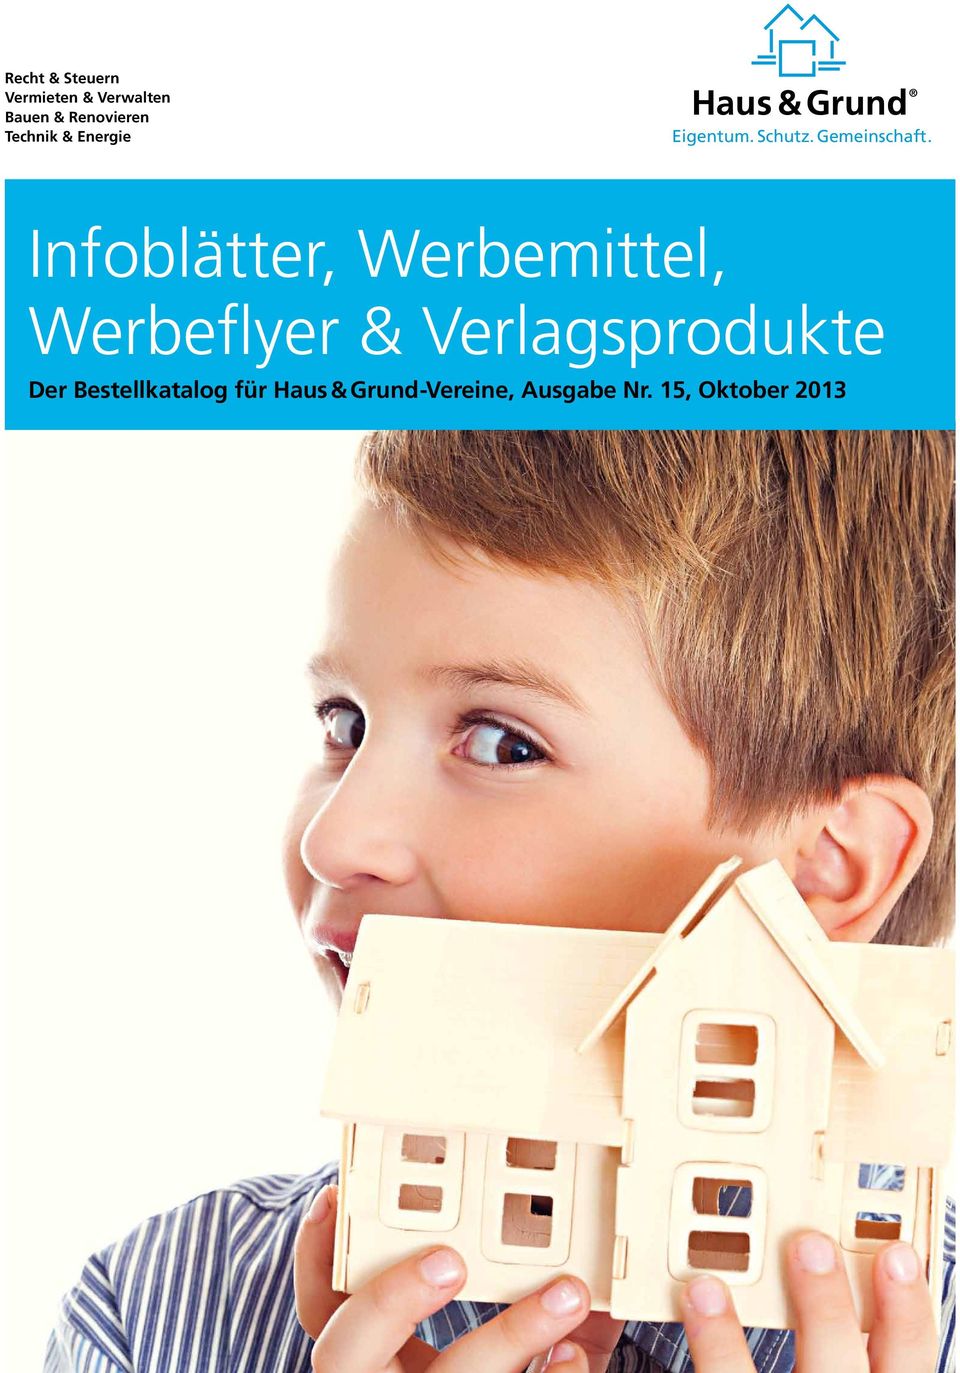 Werbemittel, Werbeflyer & Verlagsprodukte Der